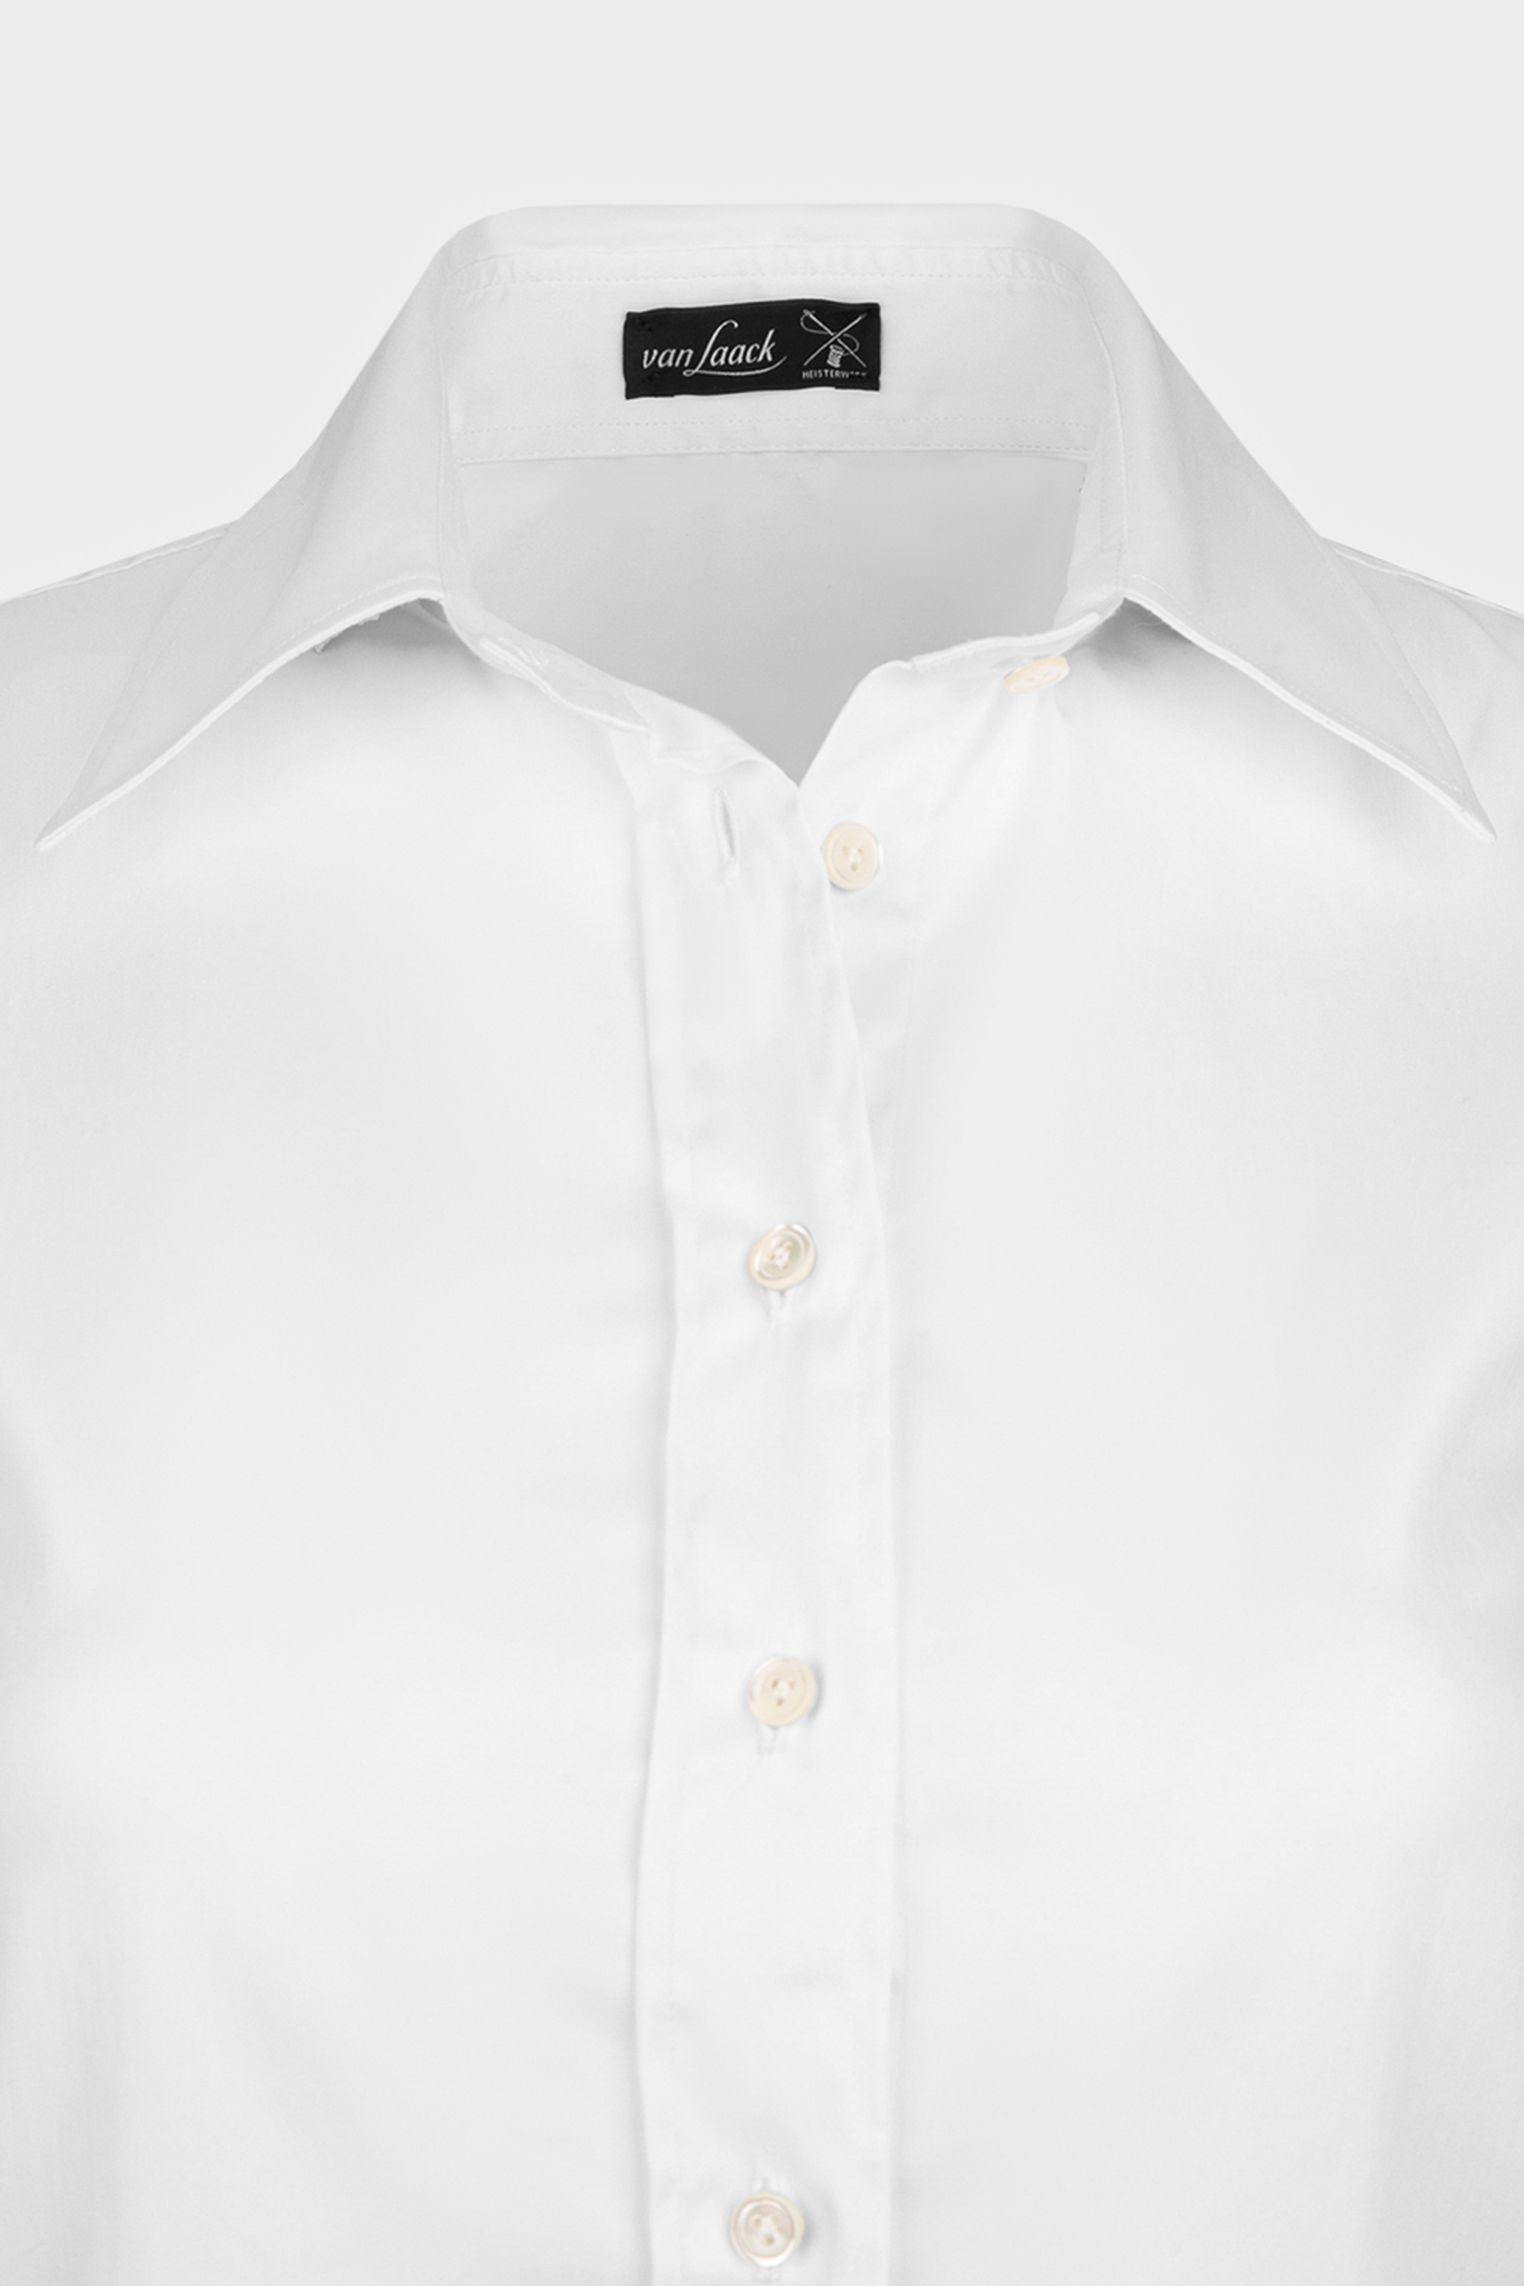 блузка M BARRY SVKN белый M-BARRY-SVKN_130830_000 ,photo 3